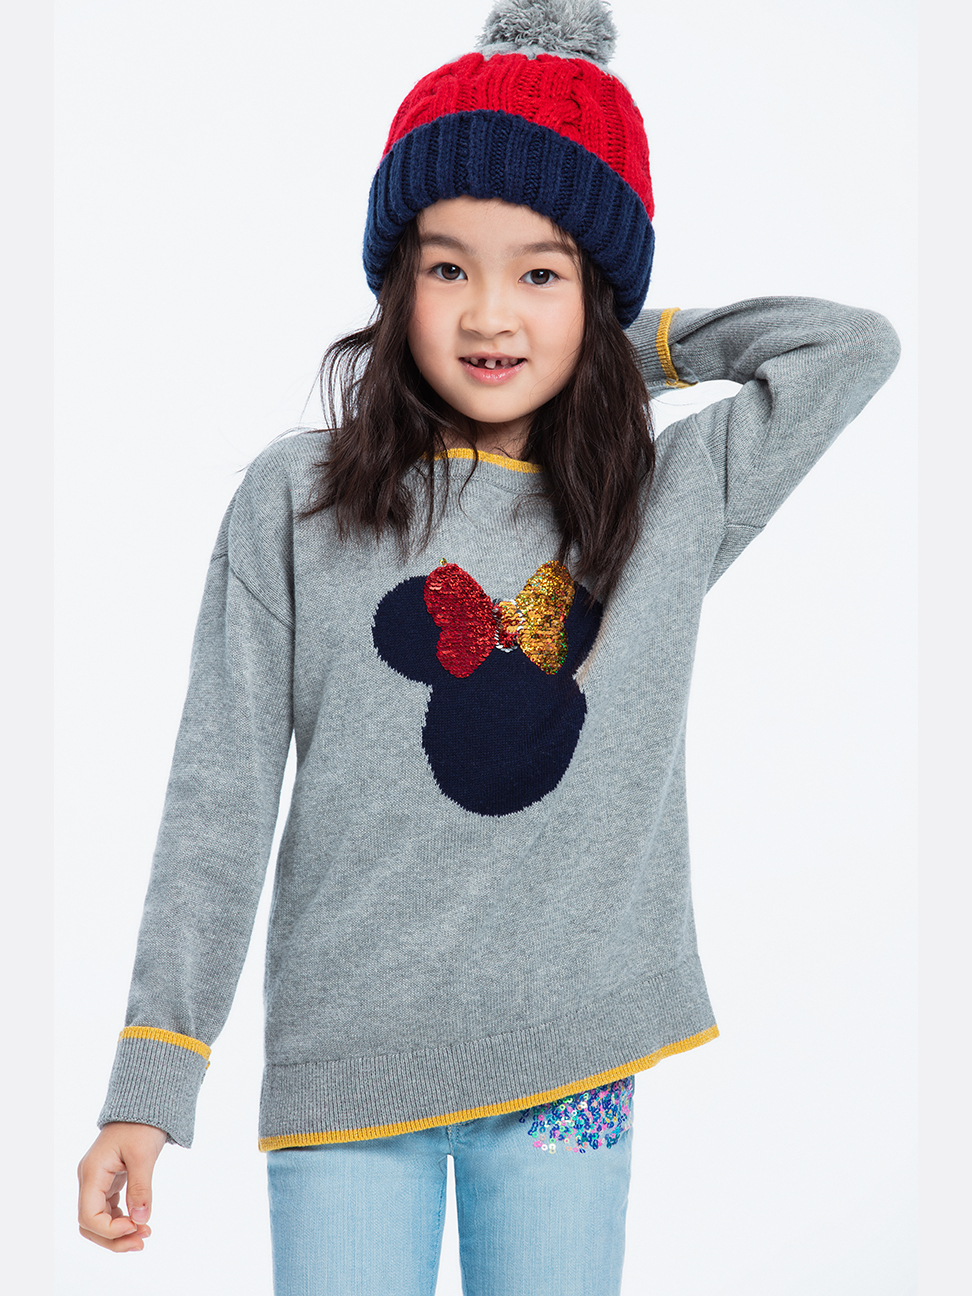 女童裝|Gap x Disney迪士尼聯名 米妮織紋針織衫-麻灰色